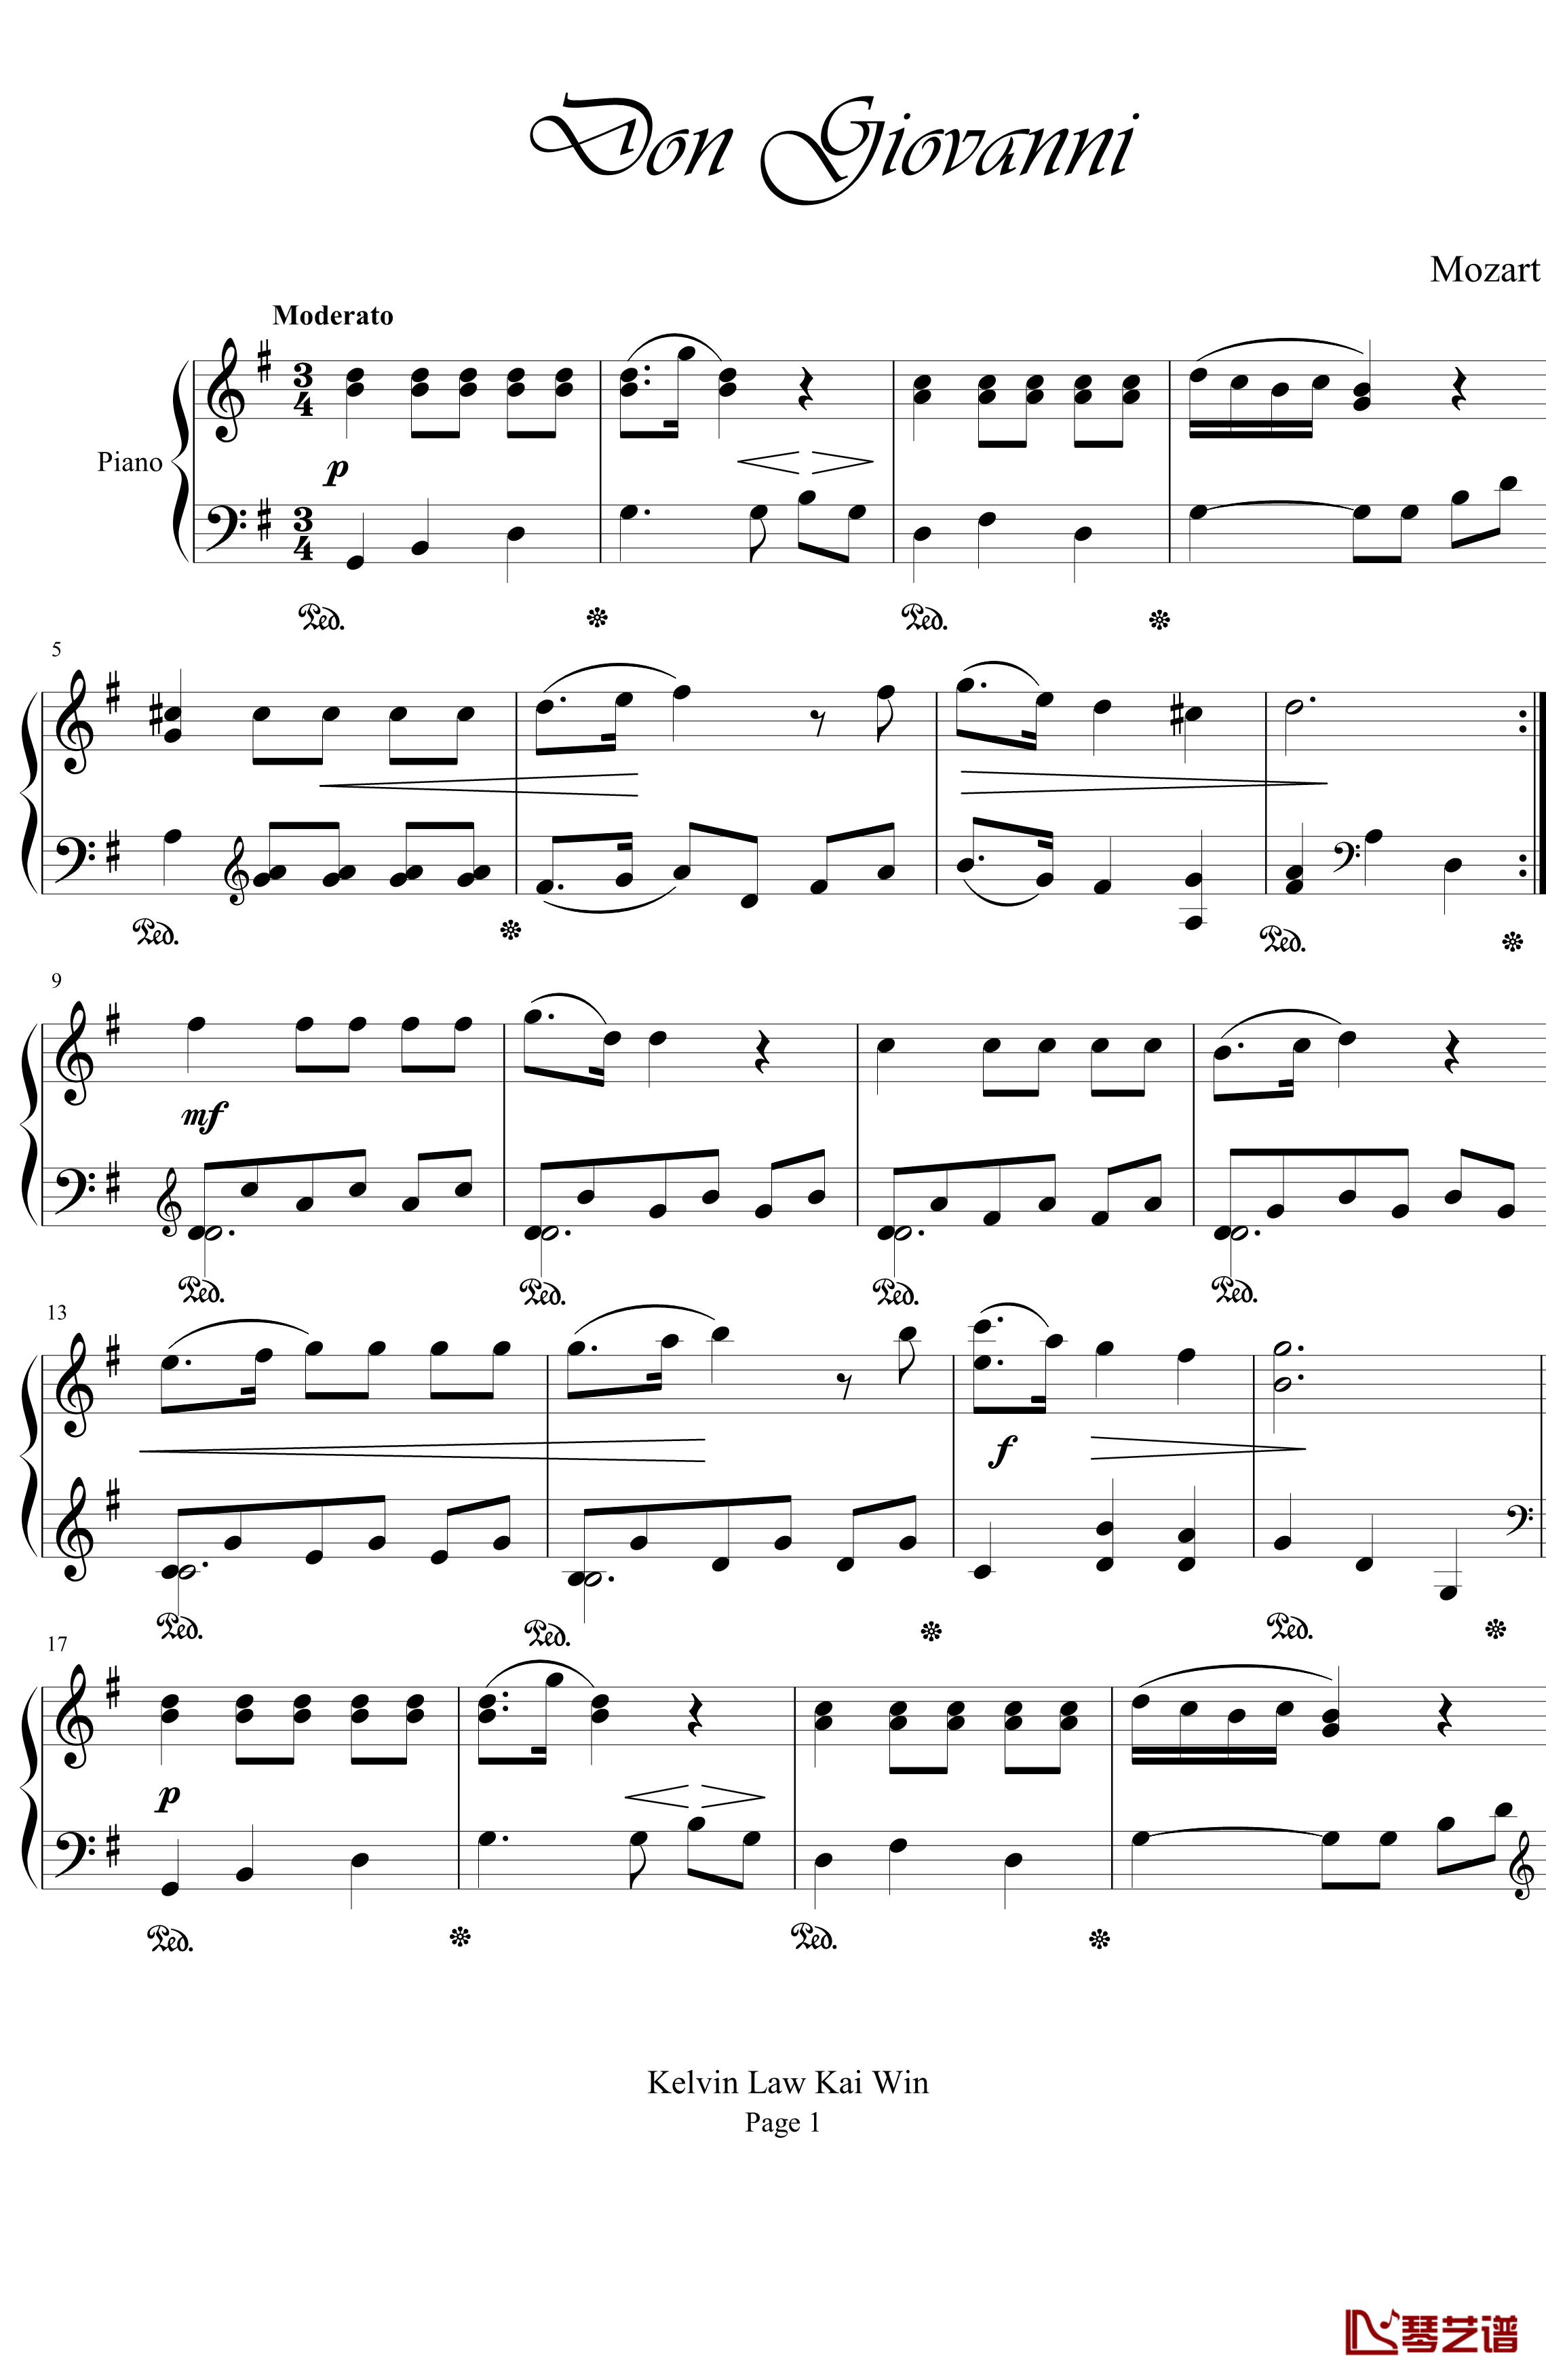 唐·喬望尼钢琴谱-Don Giovanni-莫扎特1